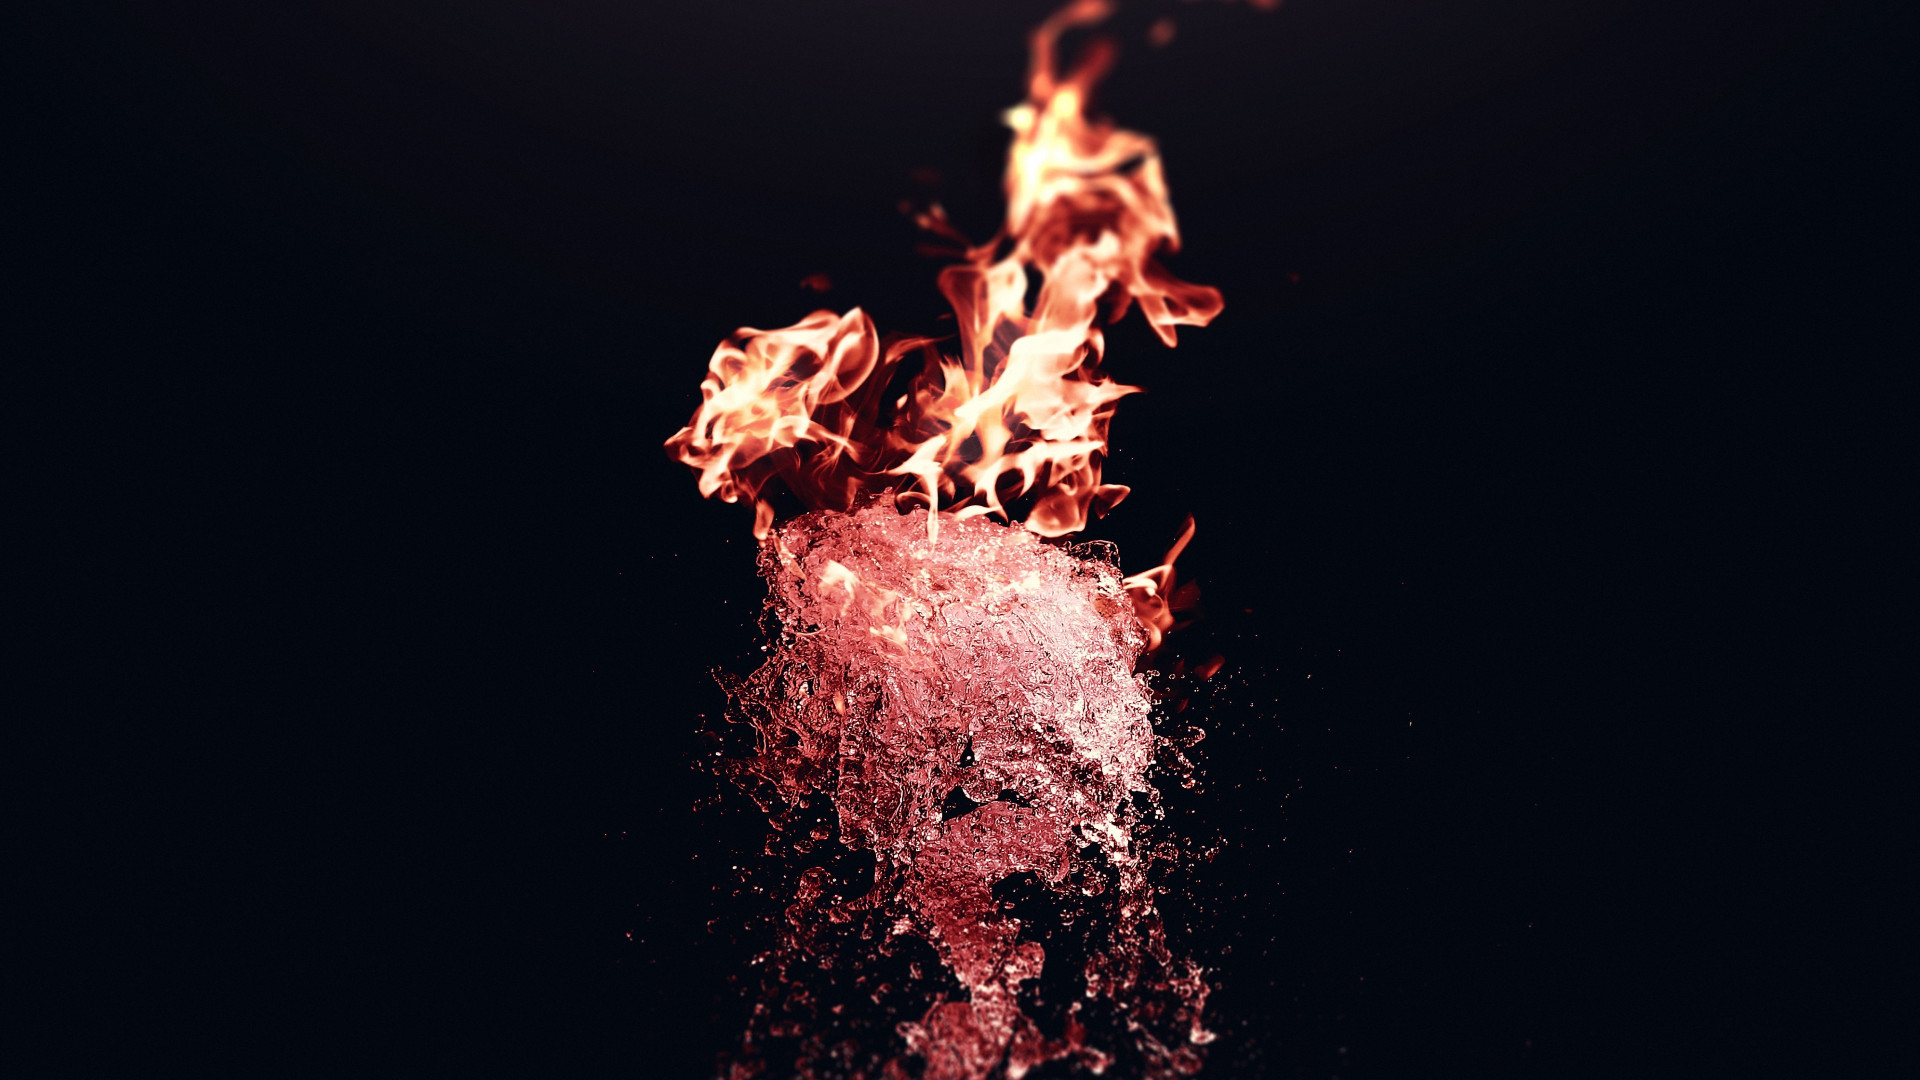 Fire vs Water wallpaper 1920x1080